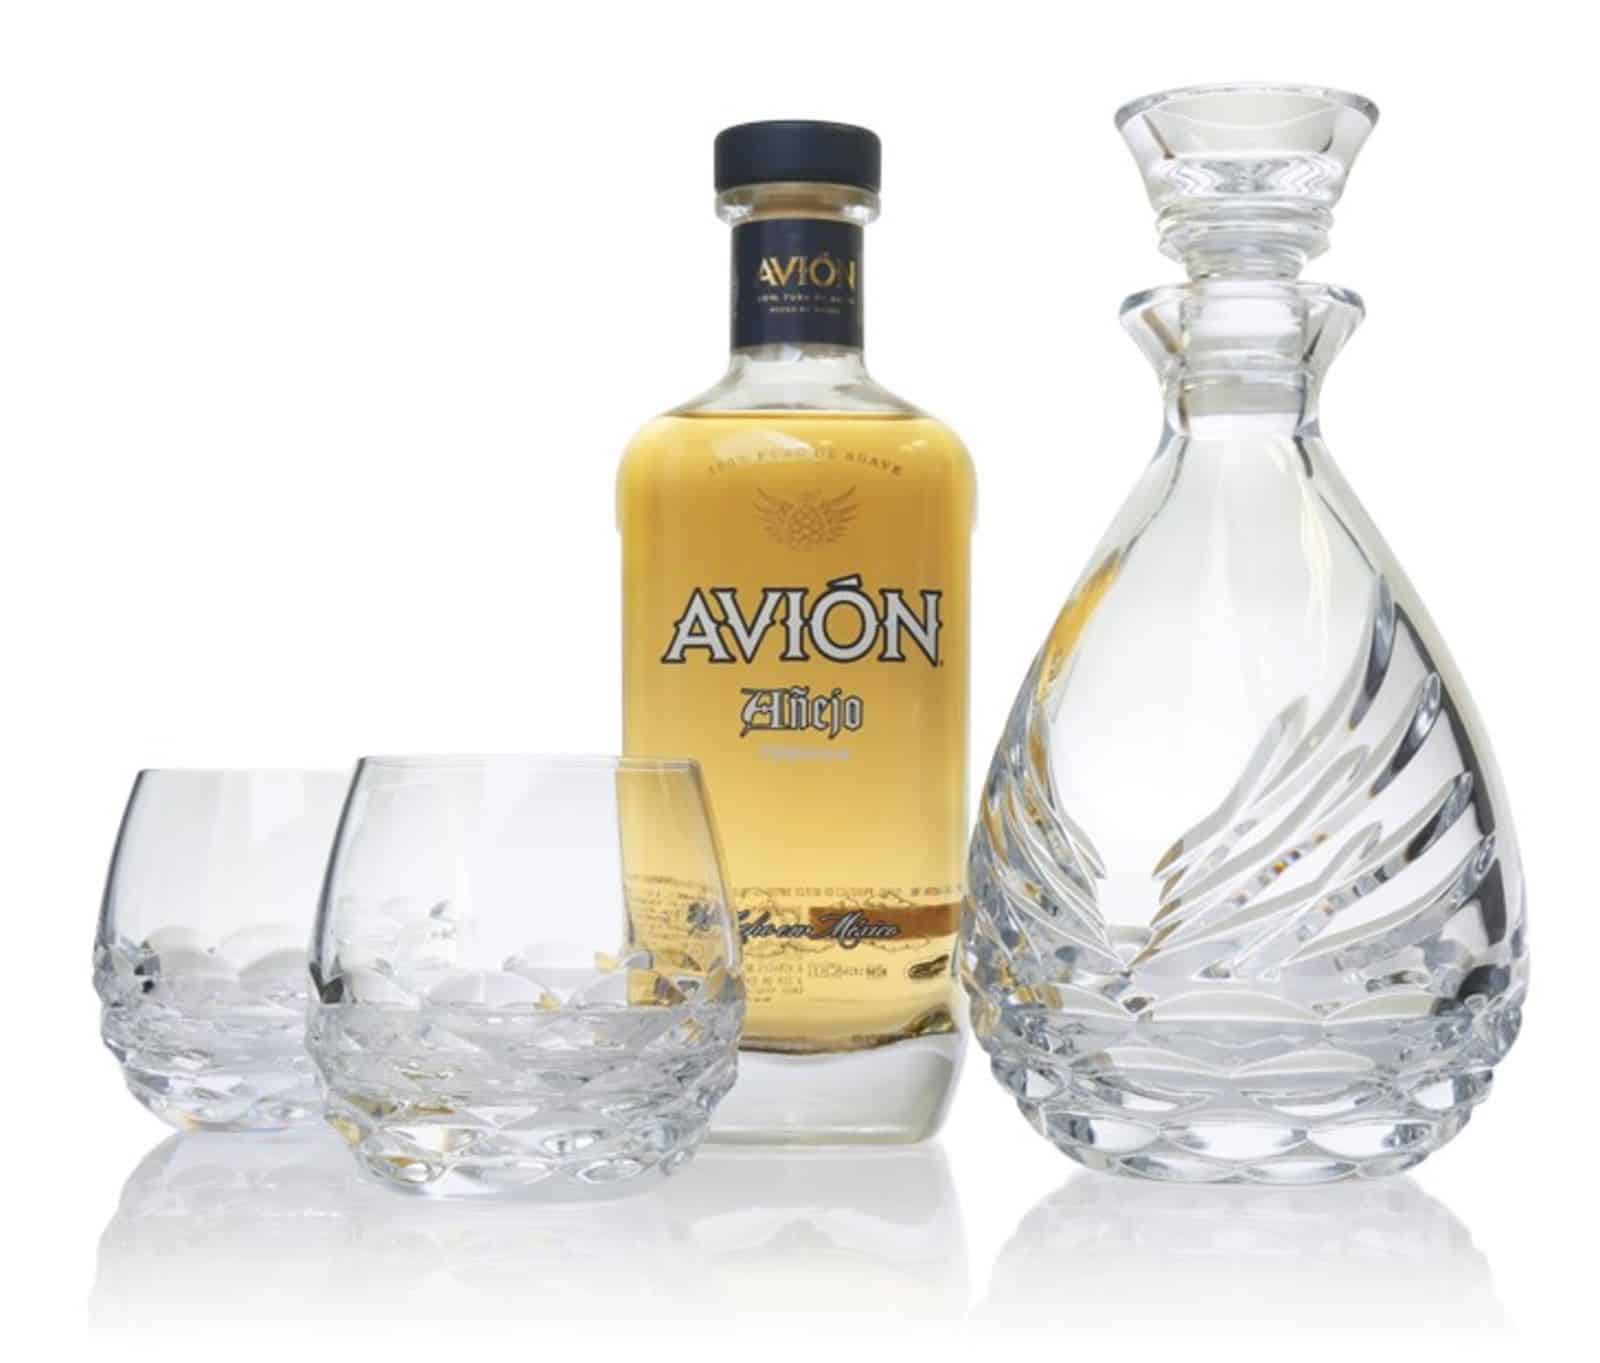 El tequila Avión y Waterford se asocian para lanzar “Avión Collection” — un set de lujosas garrafas de cristal